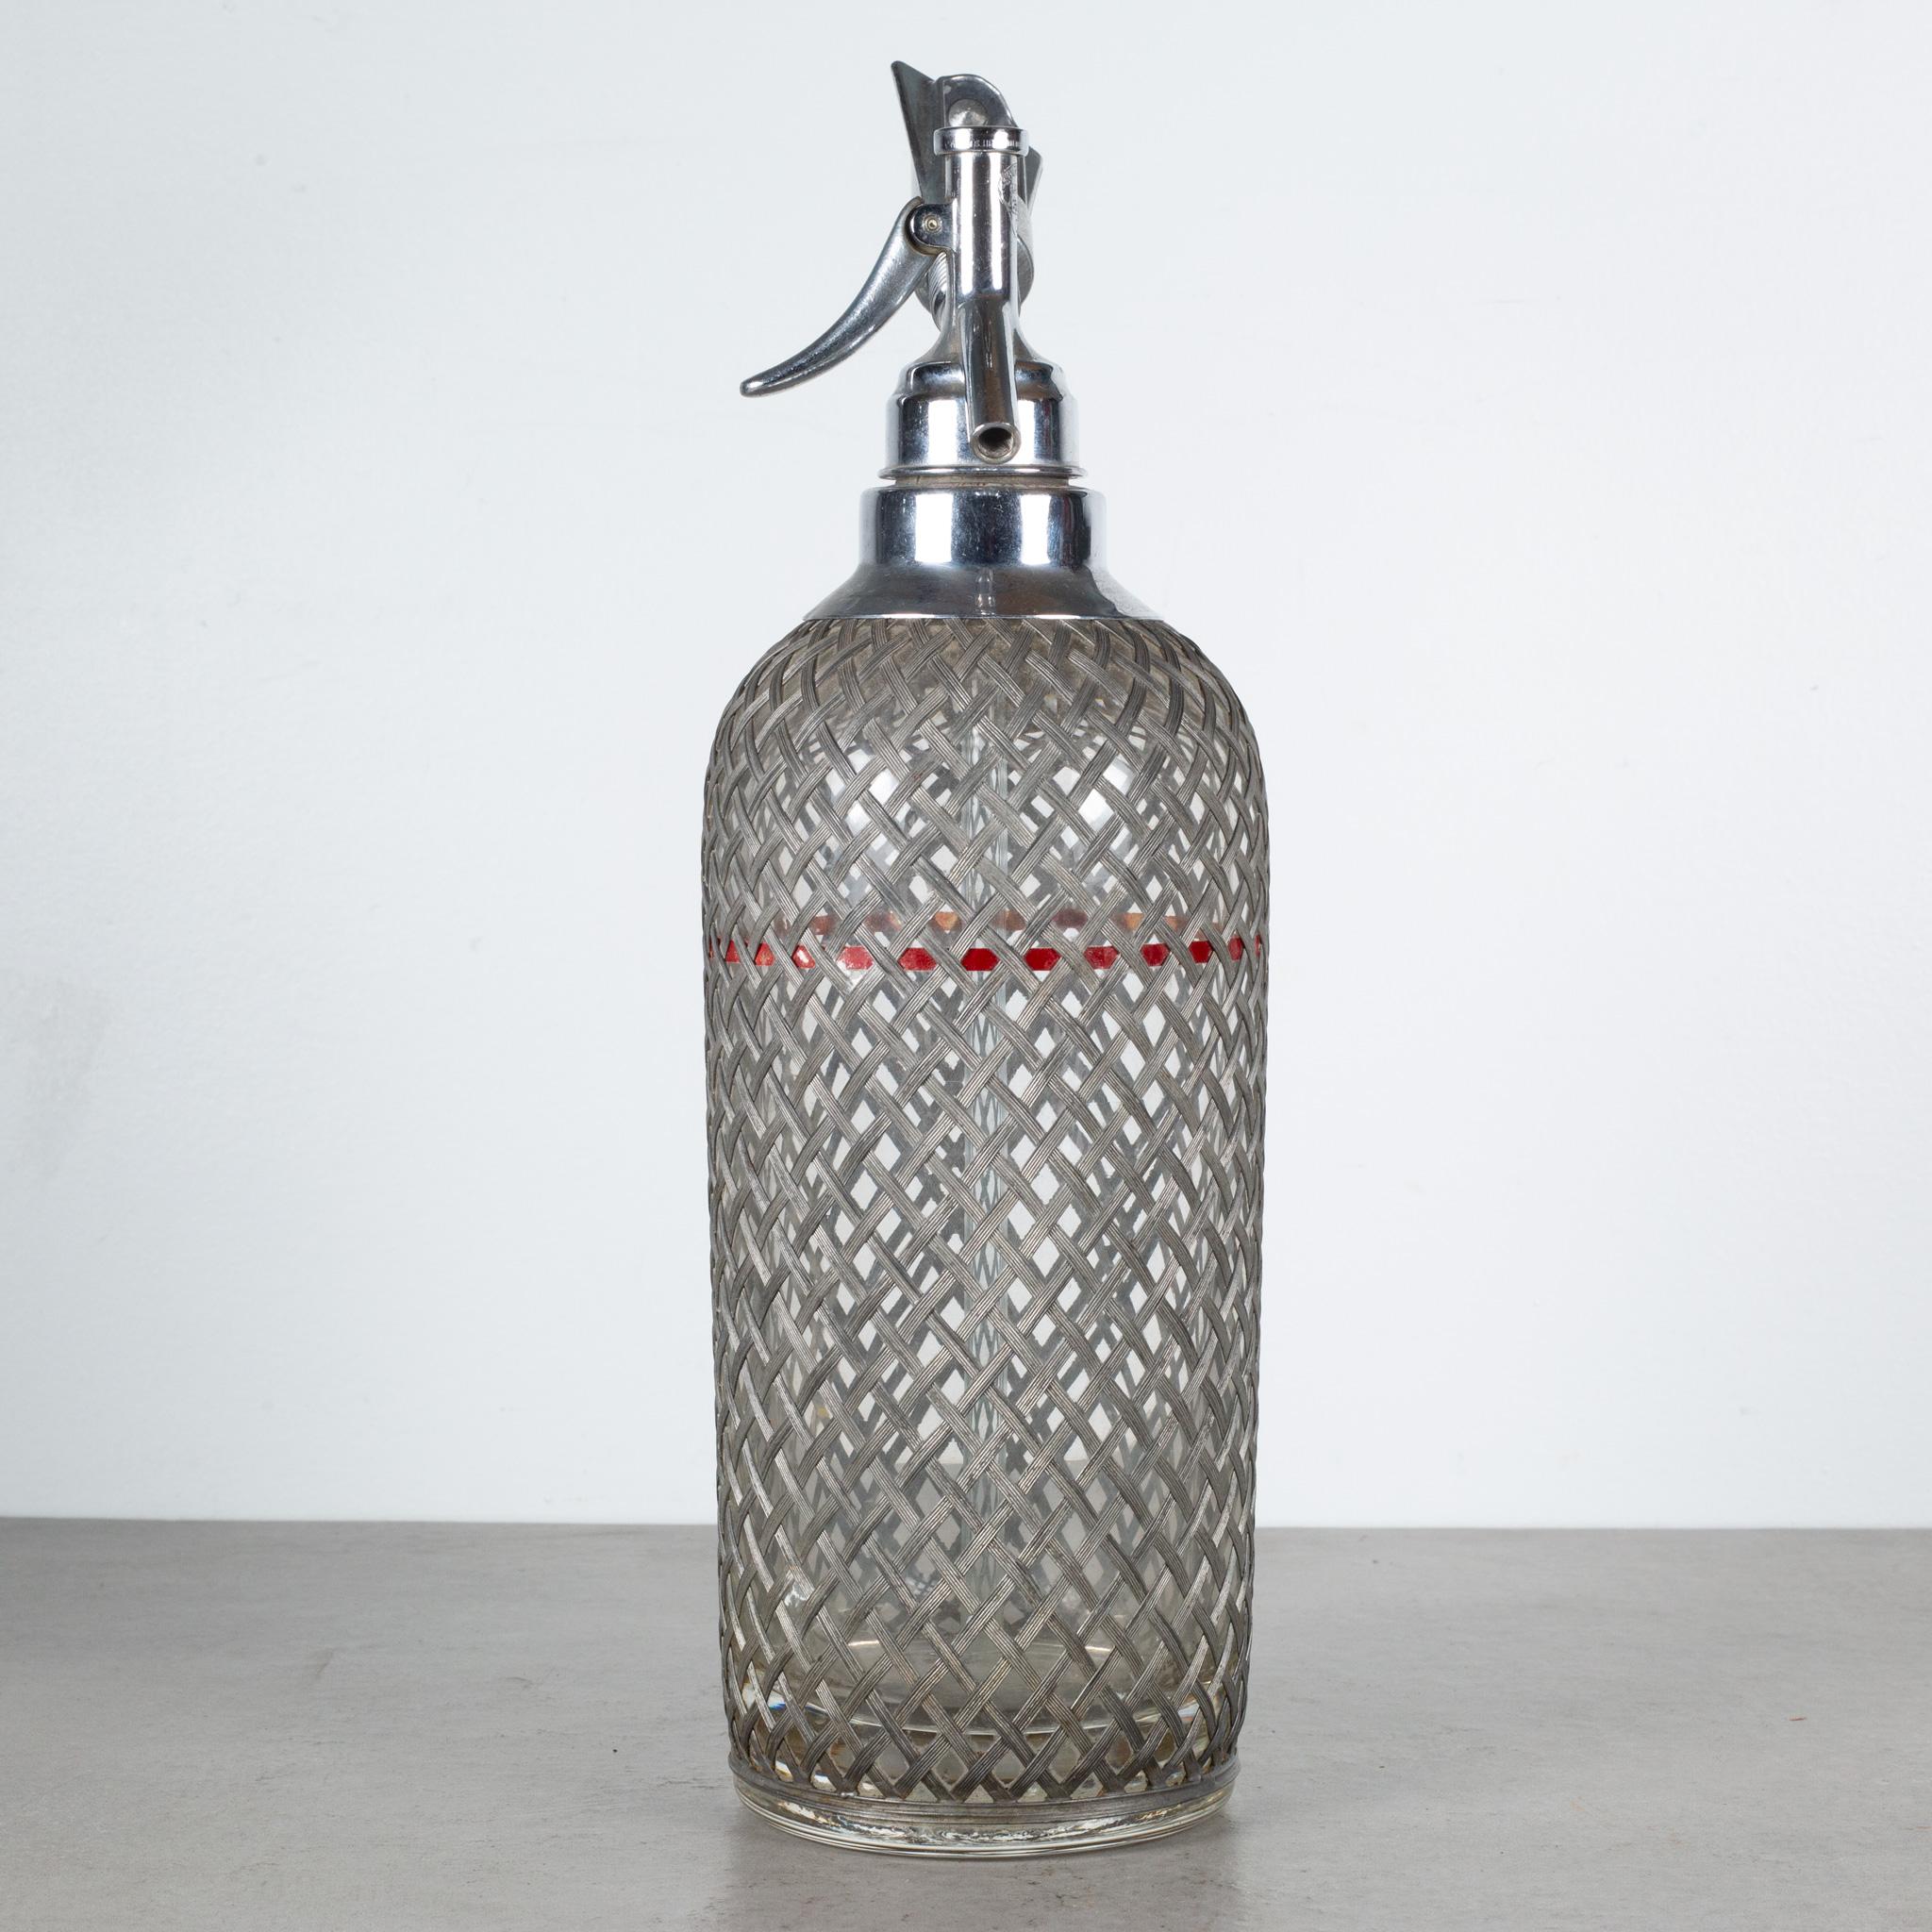 Suédois Art Deco Sparklets Wire Mesh Seltzer Bottles c.1930  (LIVRAISON GRATUITE) en vente